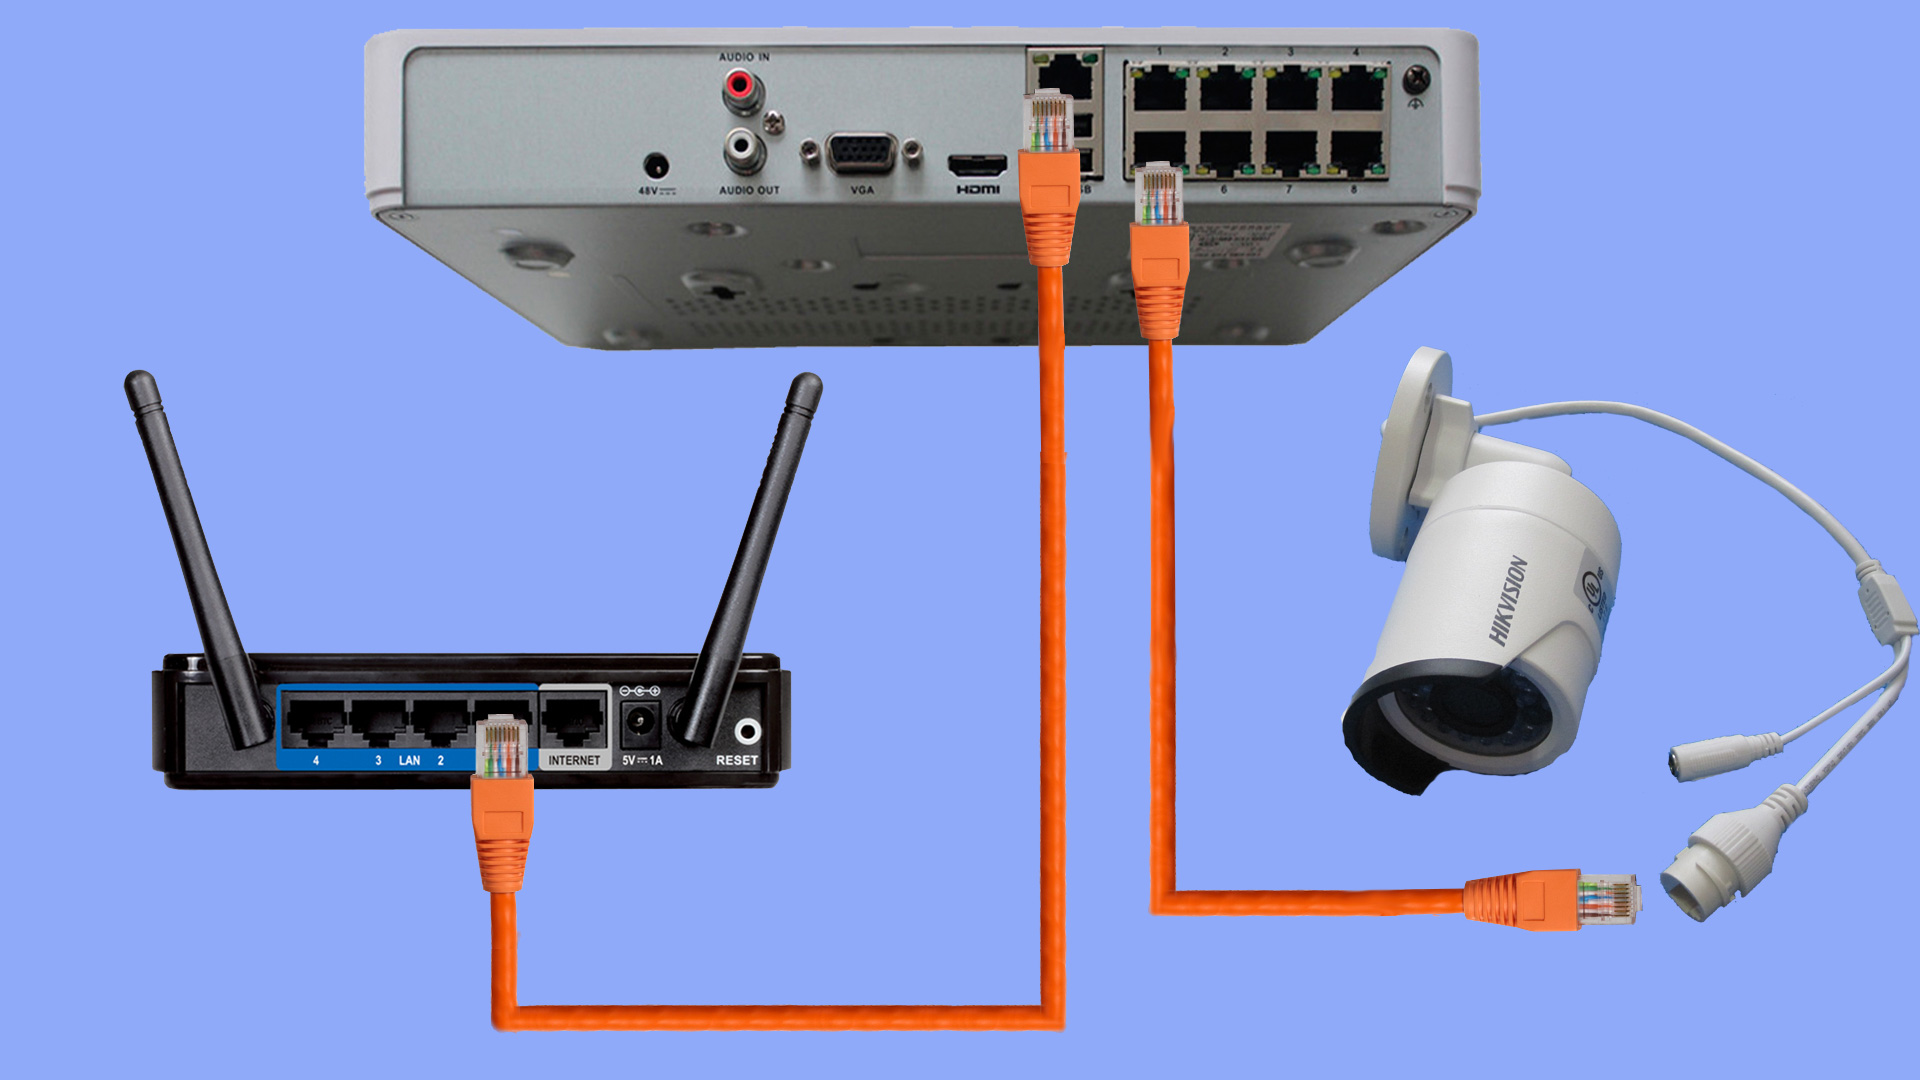 Регистратор роутер. Роутер с POE для IP камер видеонаблюдения. Как подключить IP камеру к регистратору через роутер. Подключить видеорегистратор Хиквижн к интернету. Видеорегистратор для IP камер Hikvision.